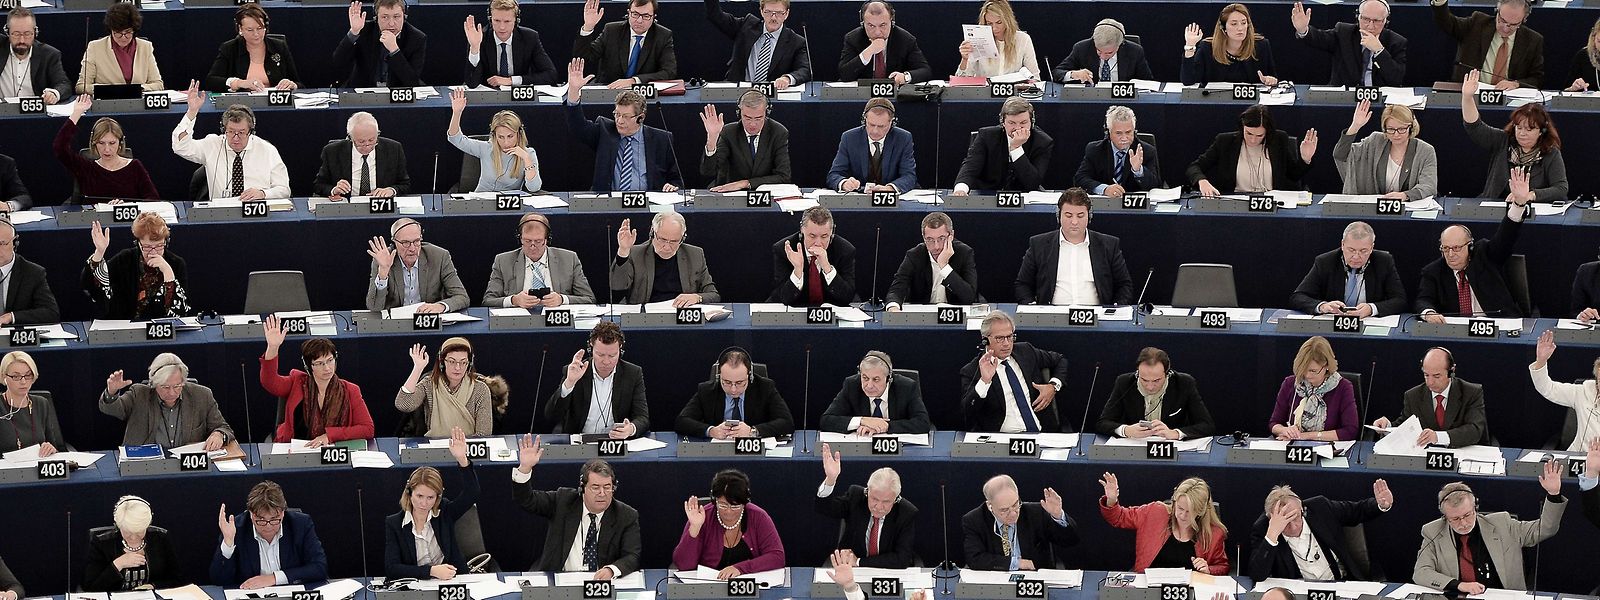 Mitglieder des Europäischen Parlaments bei einer Plenarsitzung: Knapp vor den Europawahlen steht die finale Abstimmung über das Verhandlungsergebnis zur Urheberrechtsreform an.